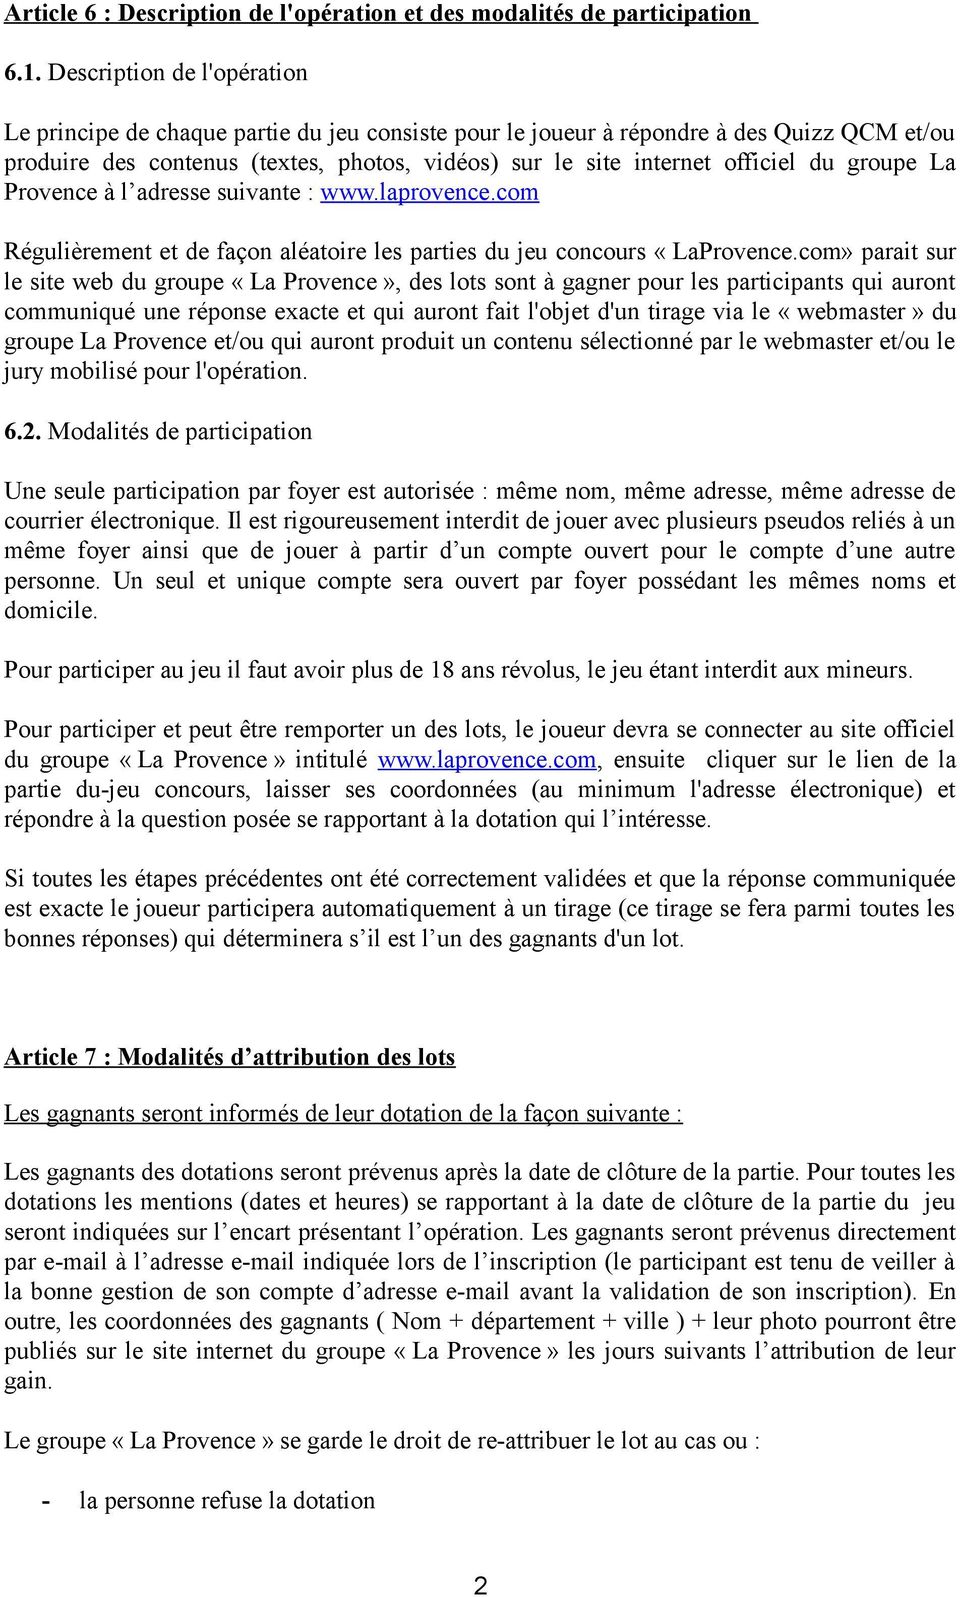 groupe La Provence à l adresse suivante : www.laprovence.com Régulièrement et de façon aléatoire les parties du jeu concours «LaProvence.